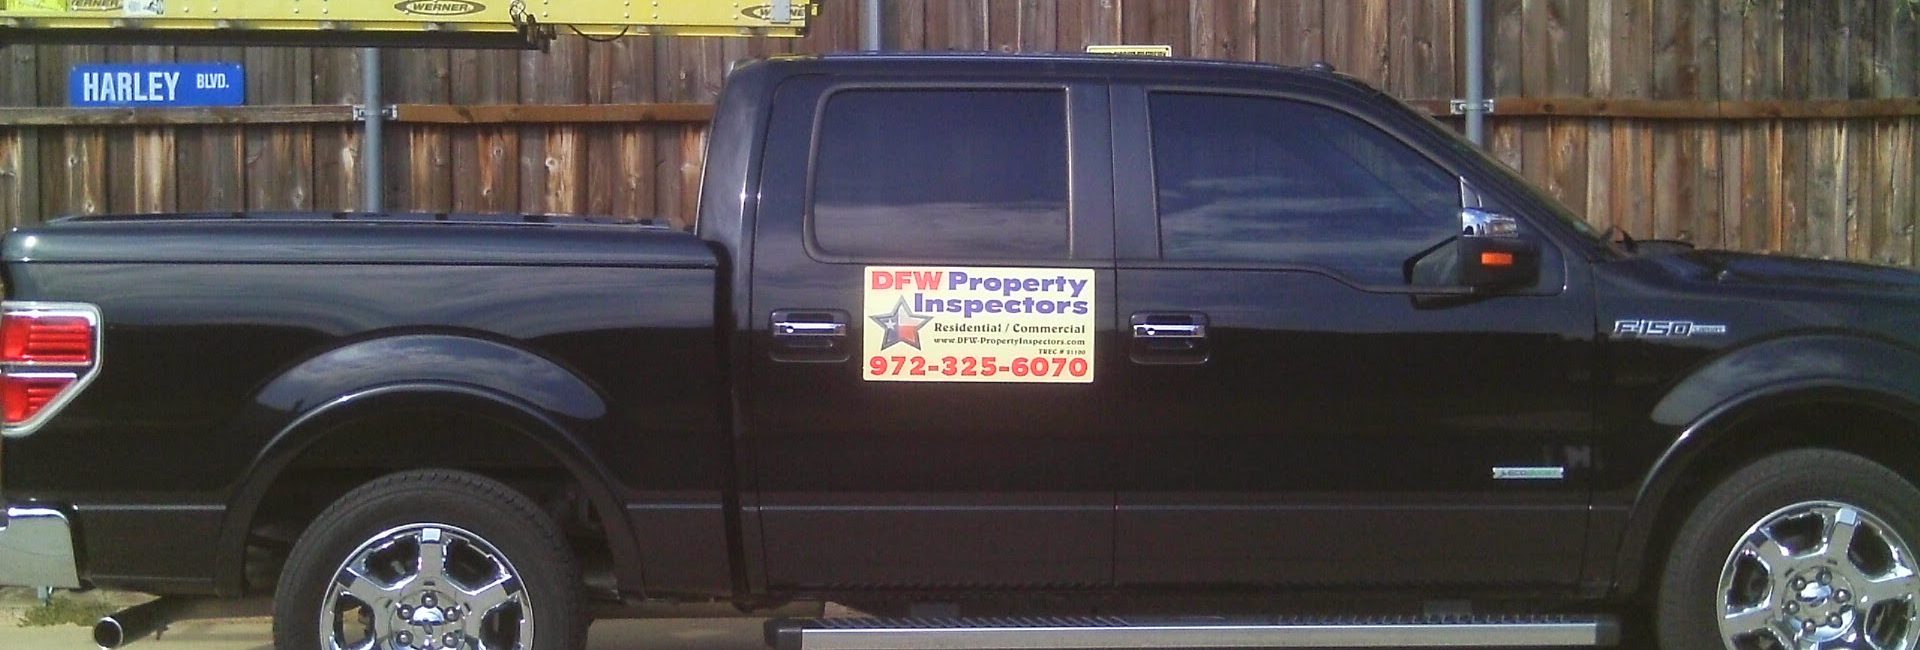 DFW Property Inspectors 4